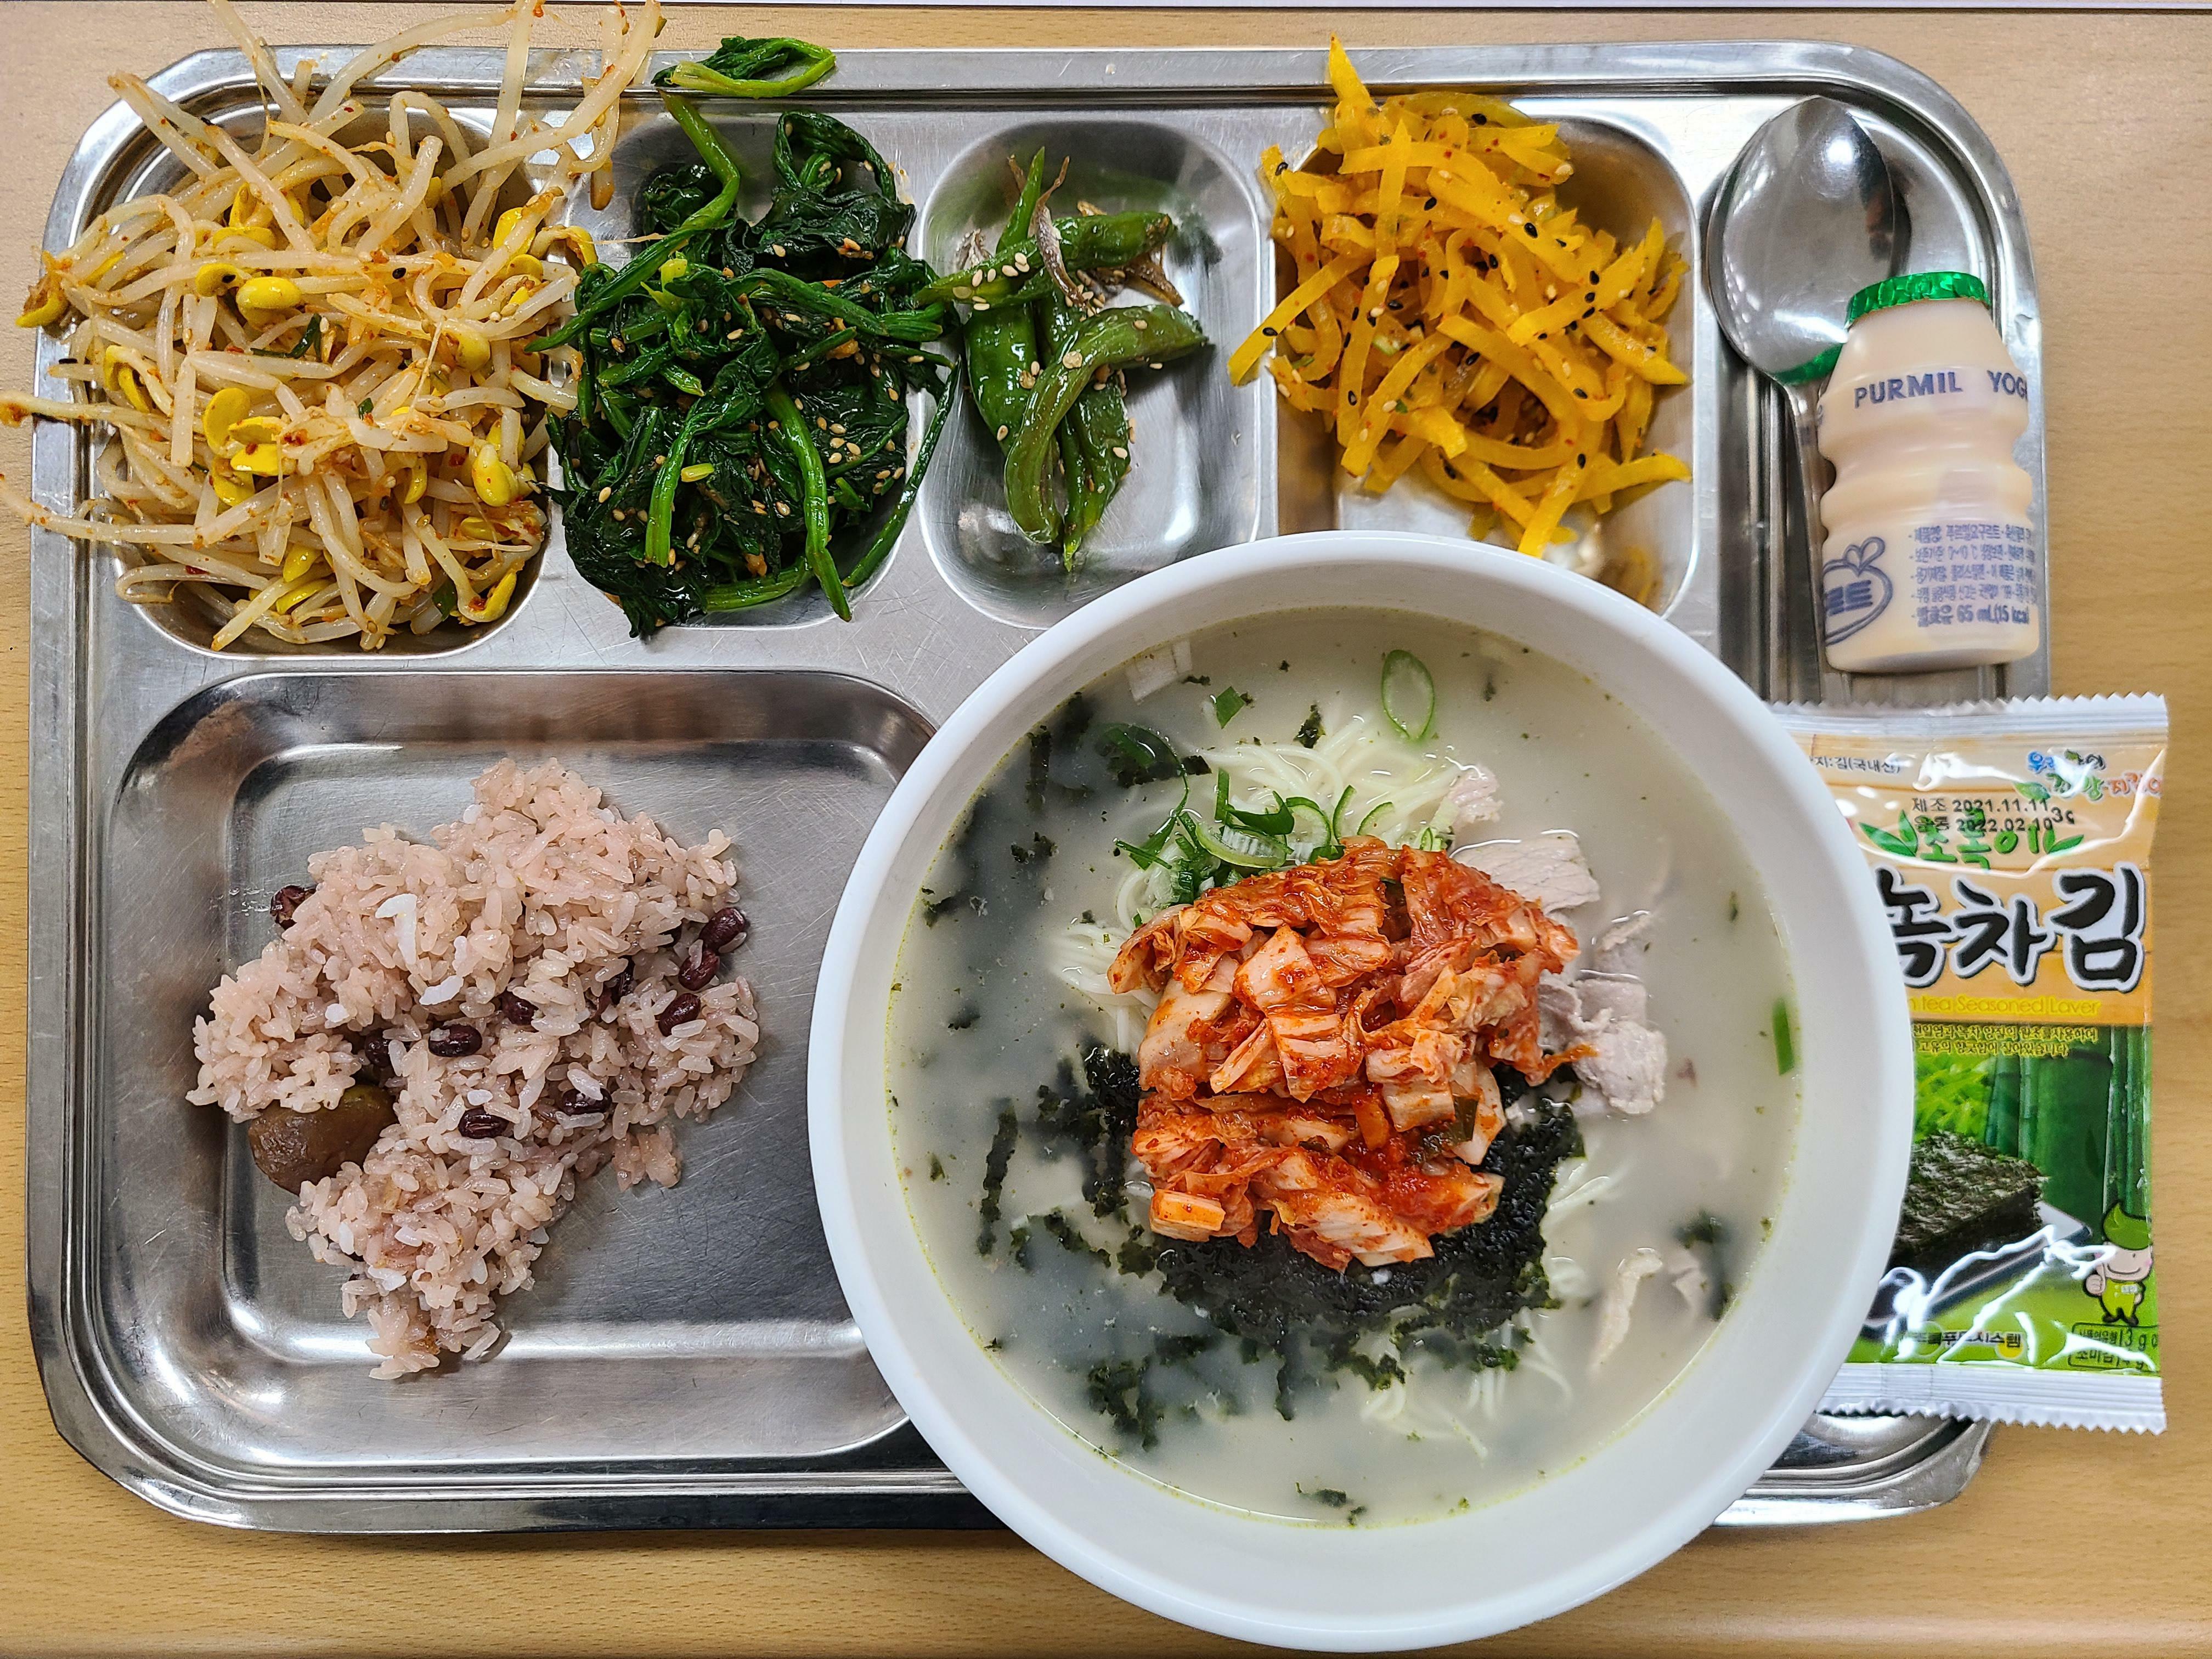 Mon déjeuner scolaire coréen (que les élèves reçoivent gratuitement) ! Soupe de nouilles au bœuf et divers banchan !